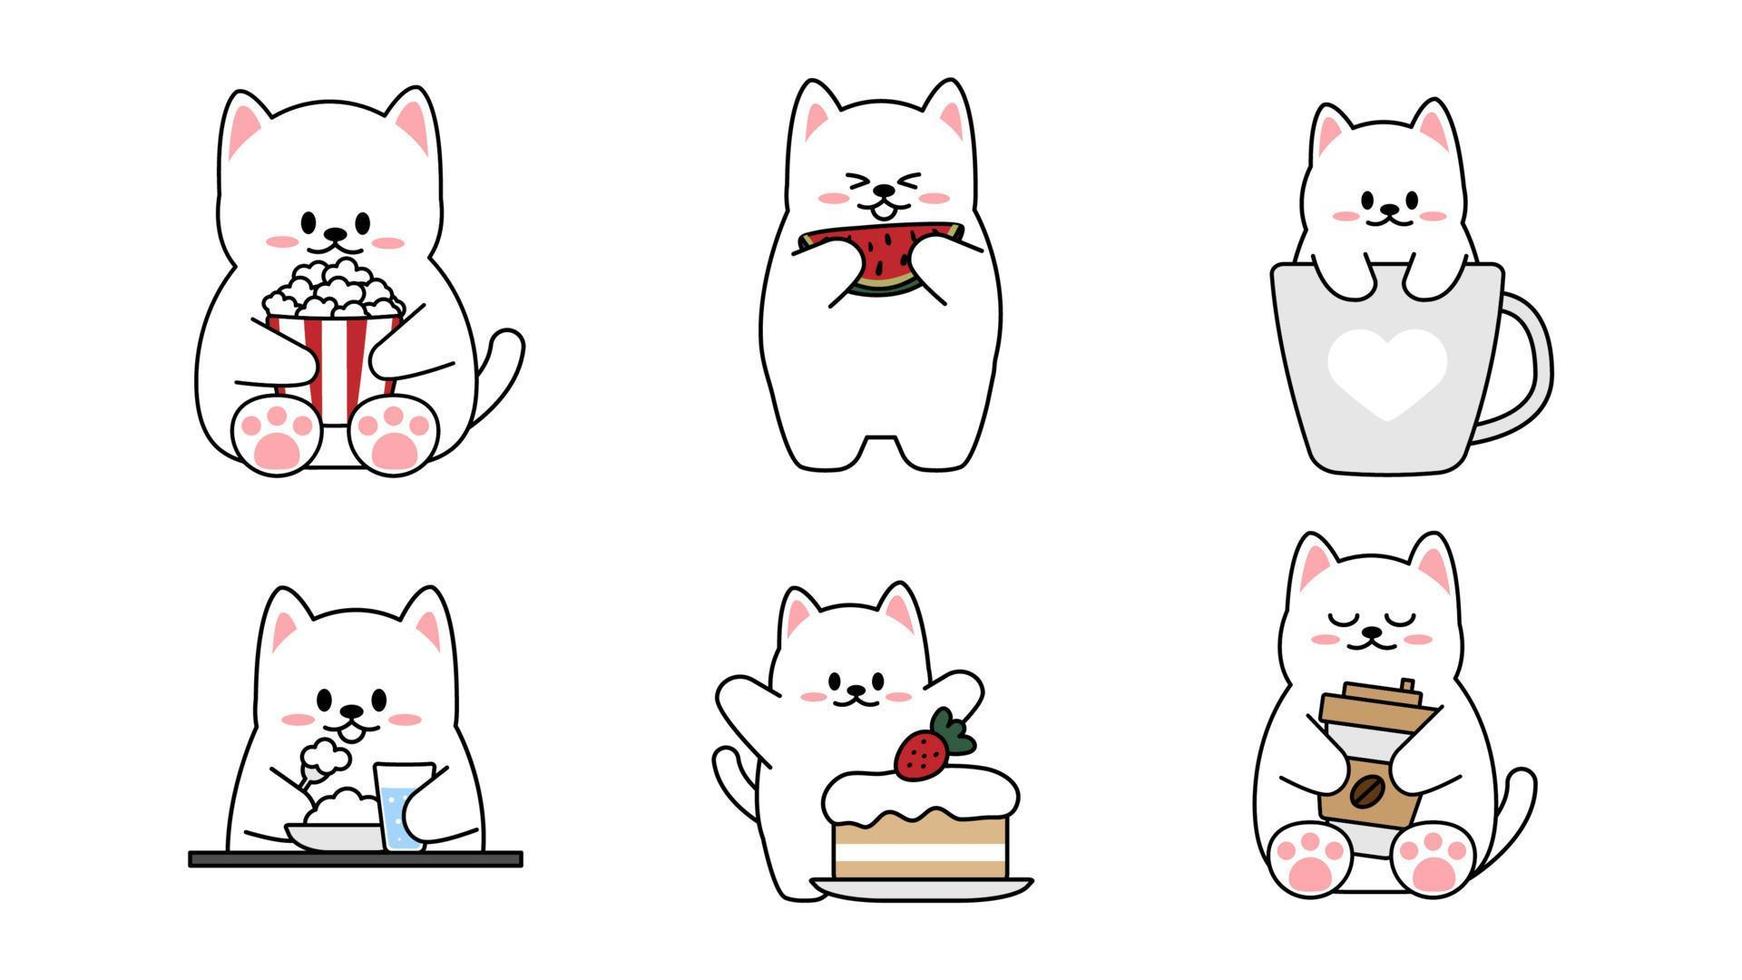 colección de diferentes gatitos lindos sobre un fondo blanco. Conjunto kawaii de diseño de personajes de animales divertidos en estilo de dibujos animados. gato mascota. pegatinas de bebé. ilustración vectorial. vector